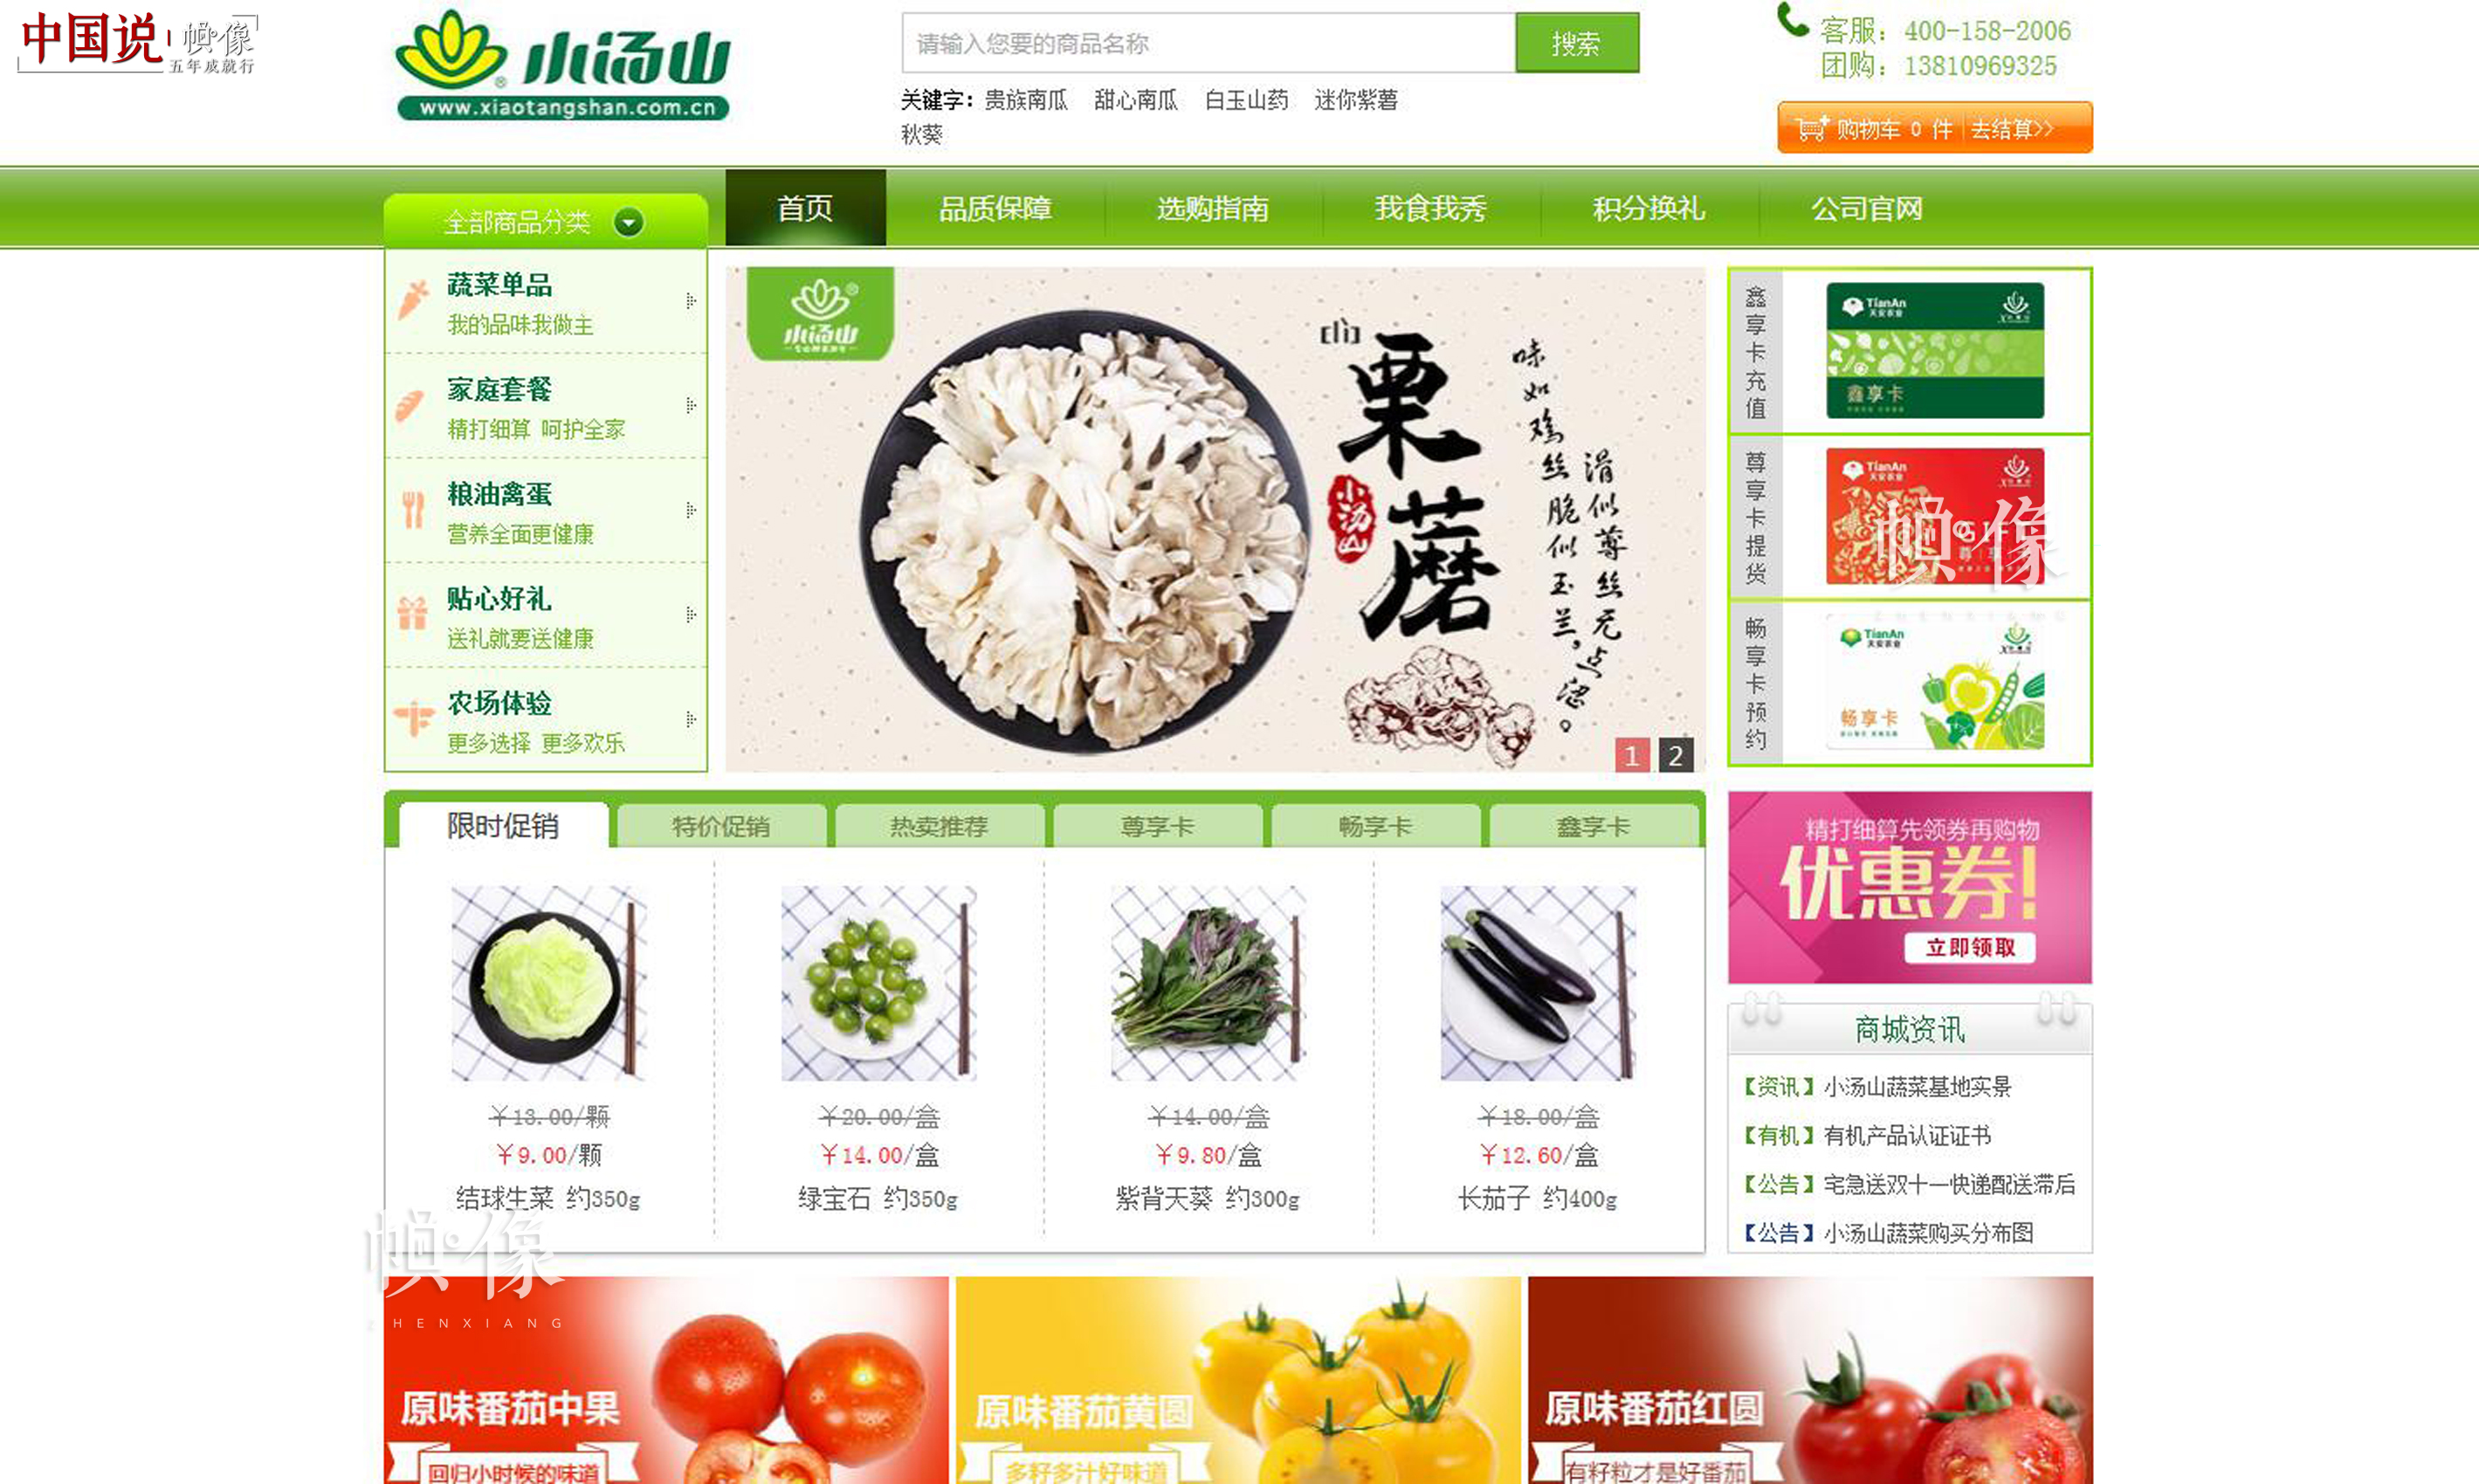 图为北京天安农业小汤山蔬菜电商售菜网站。 中国网记者 赵超 摄